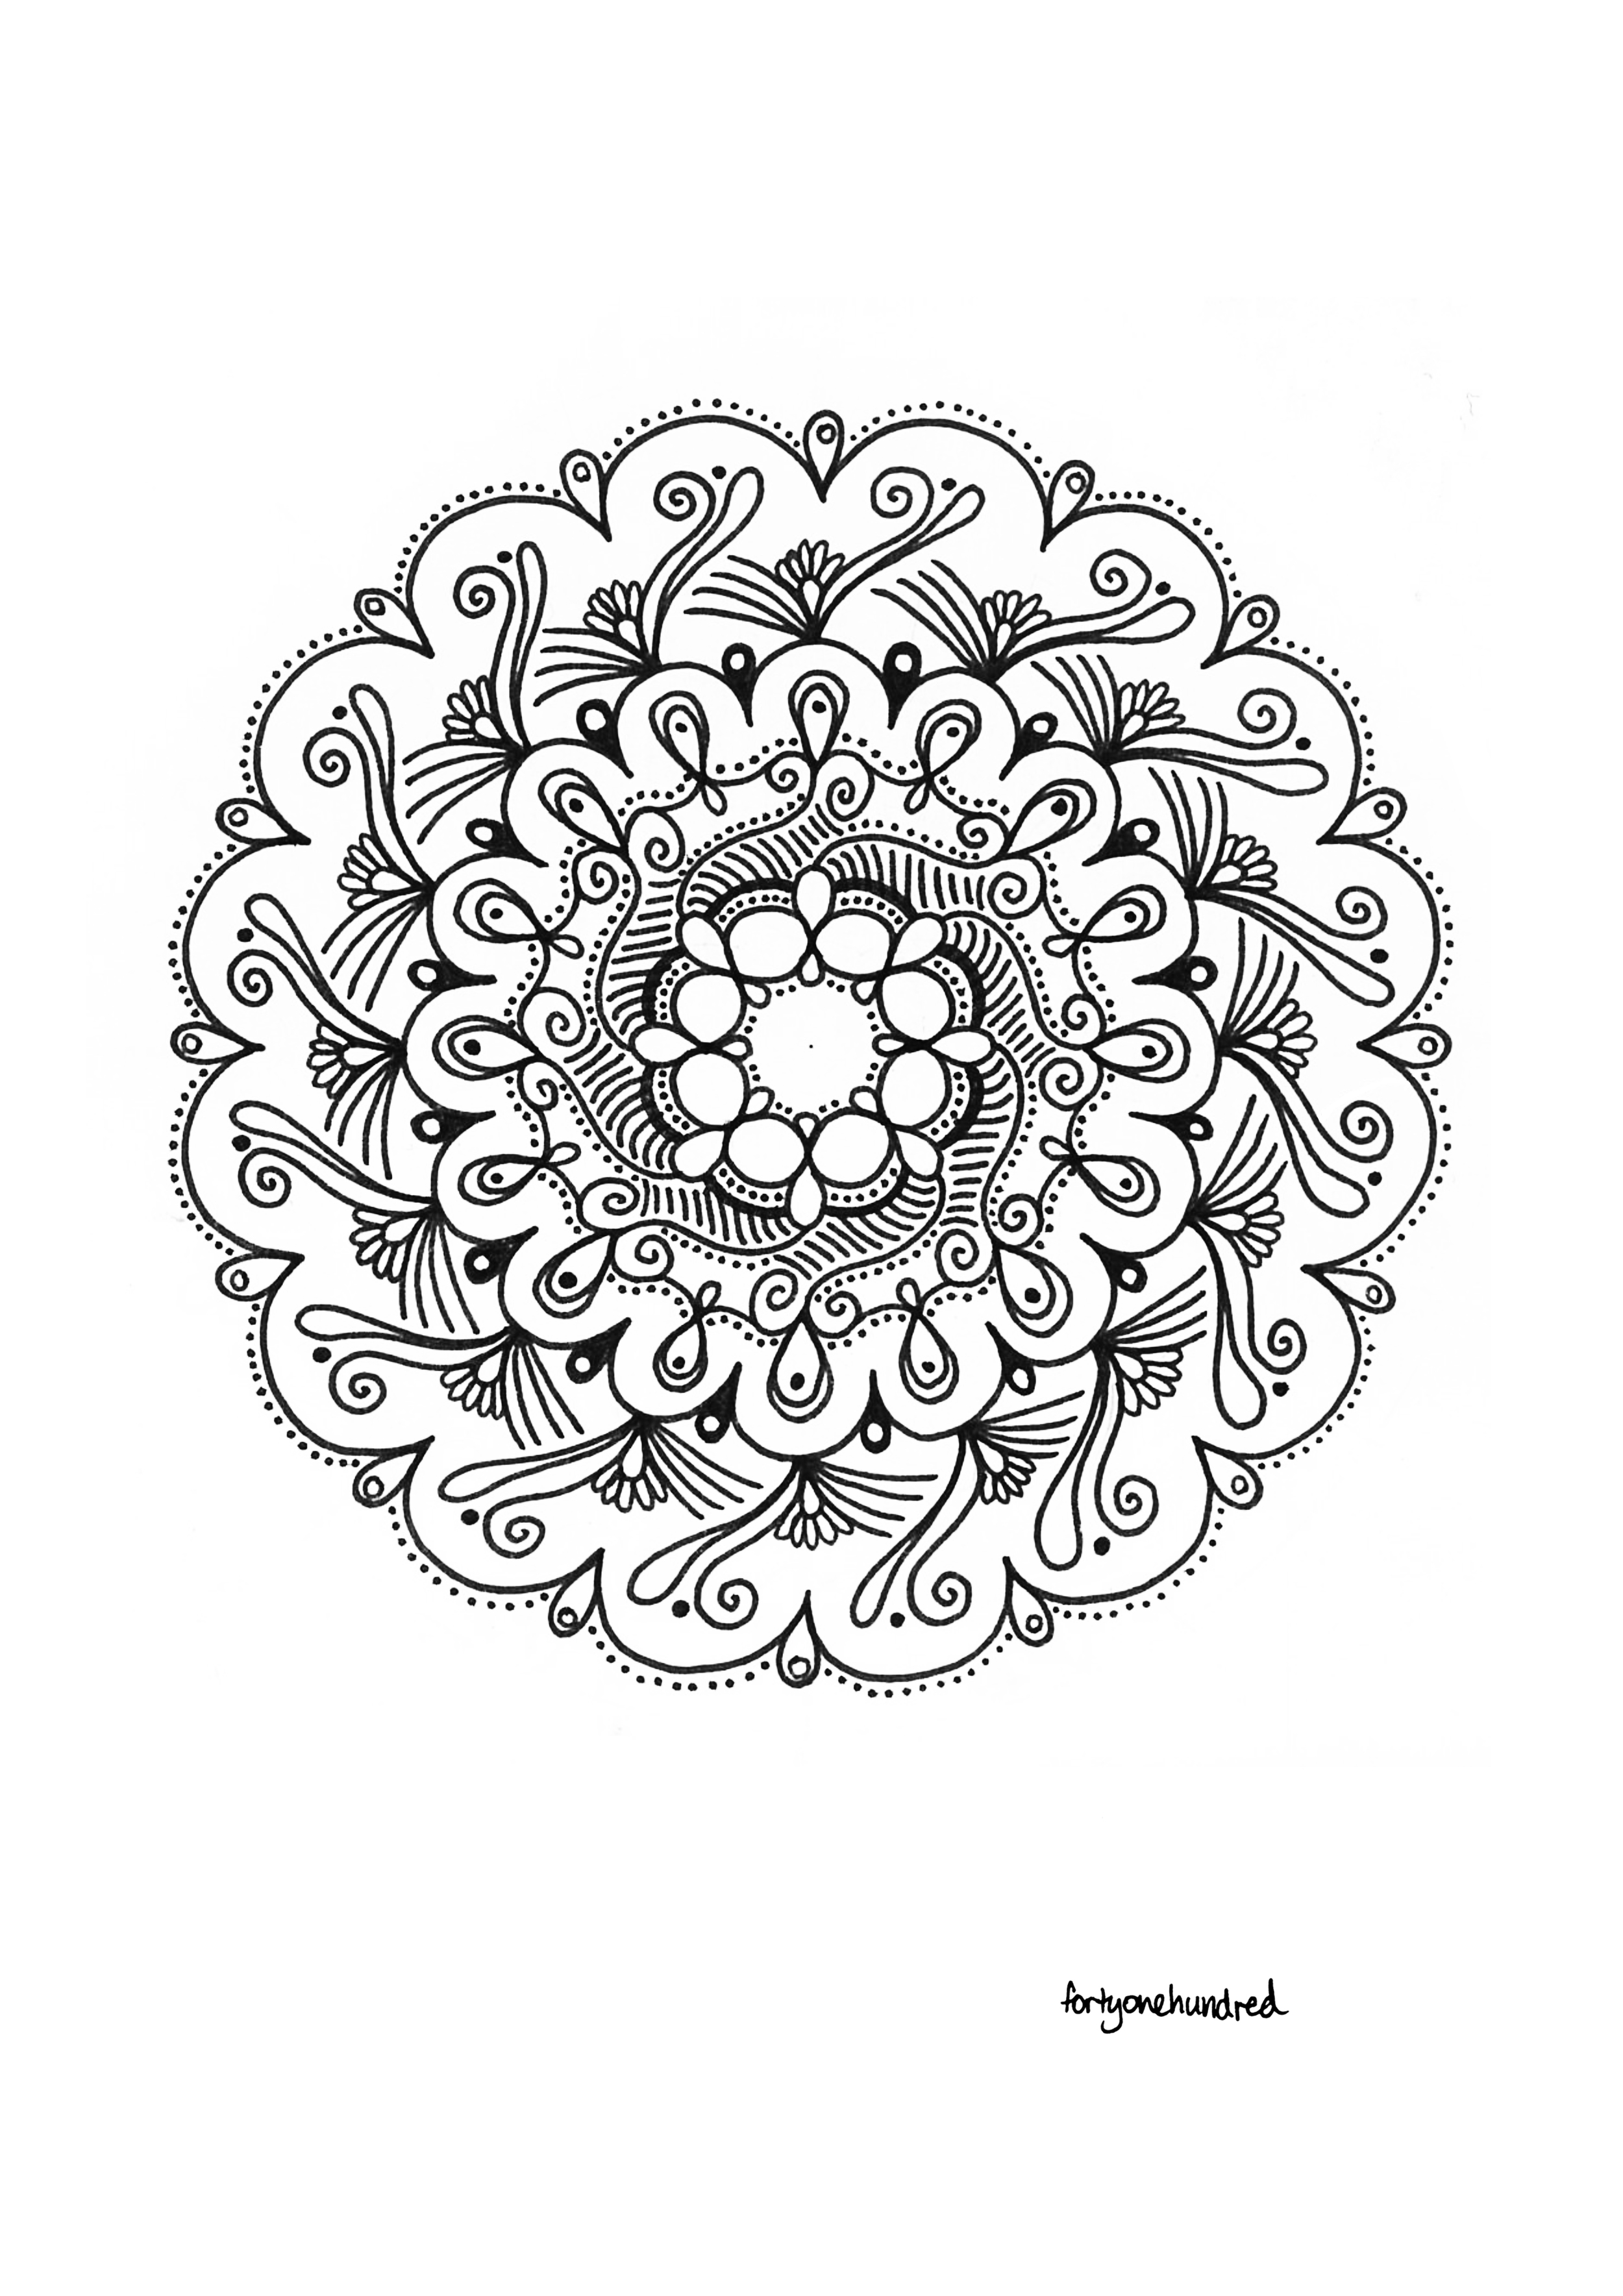 The fractal mandala.jpg